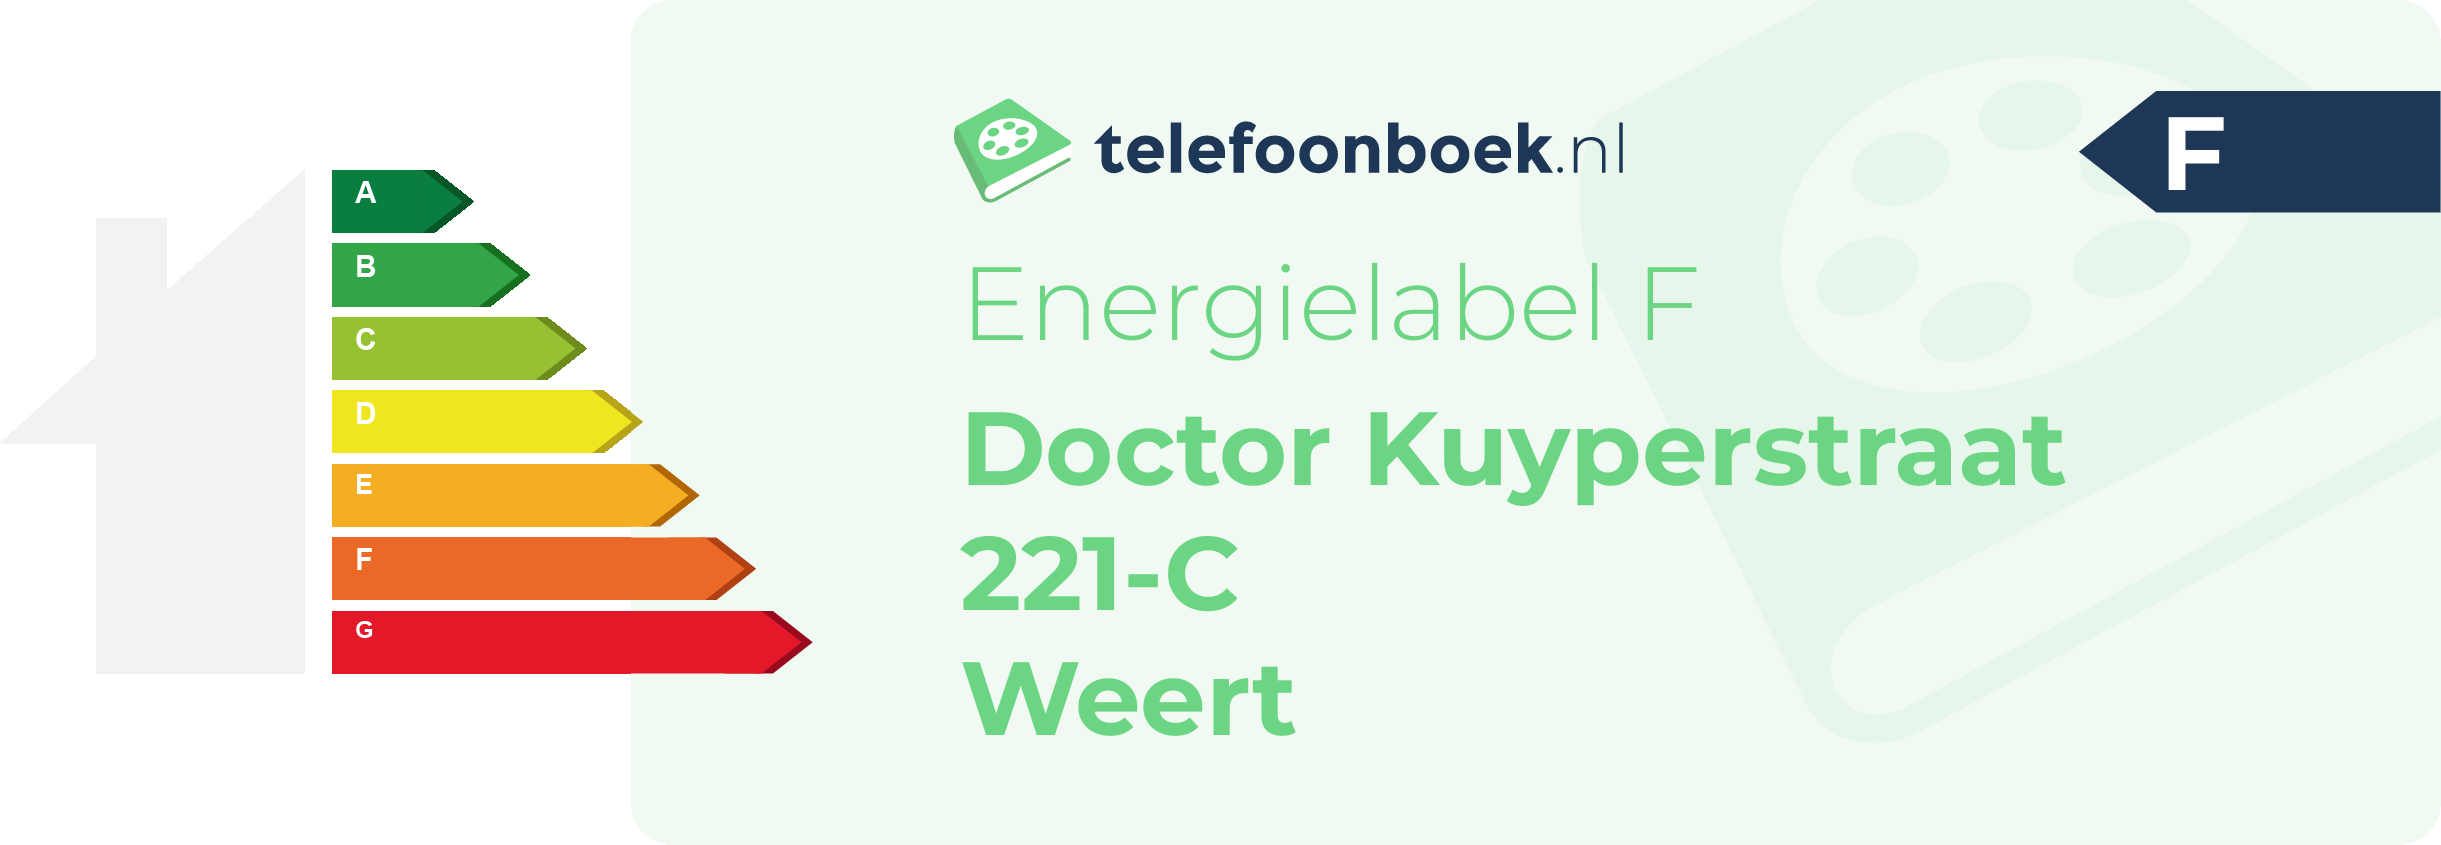 Energielabel Doctor Kuyperstraat 221-C Weert